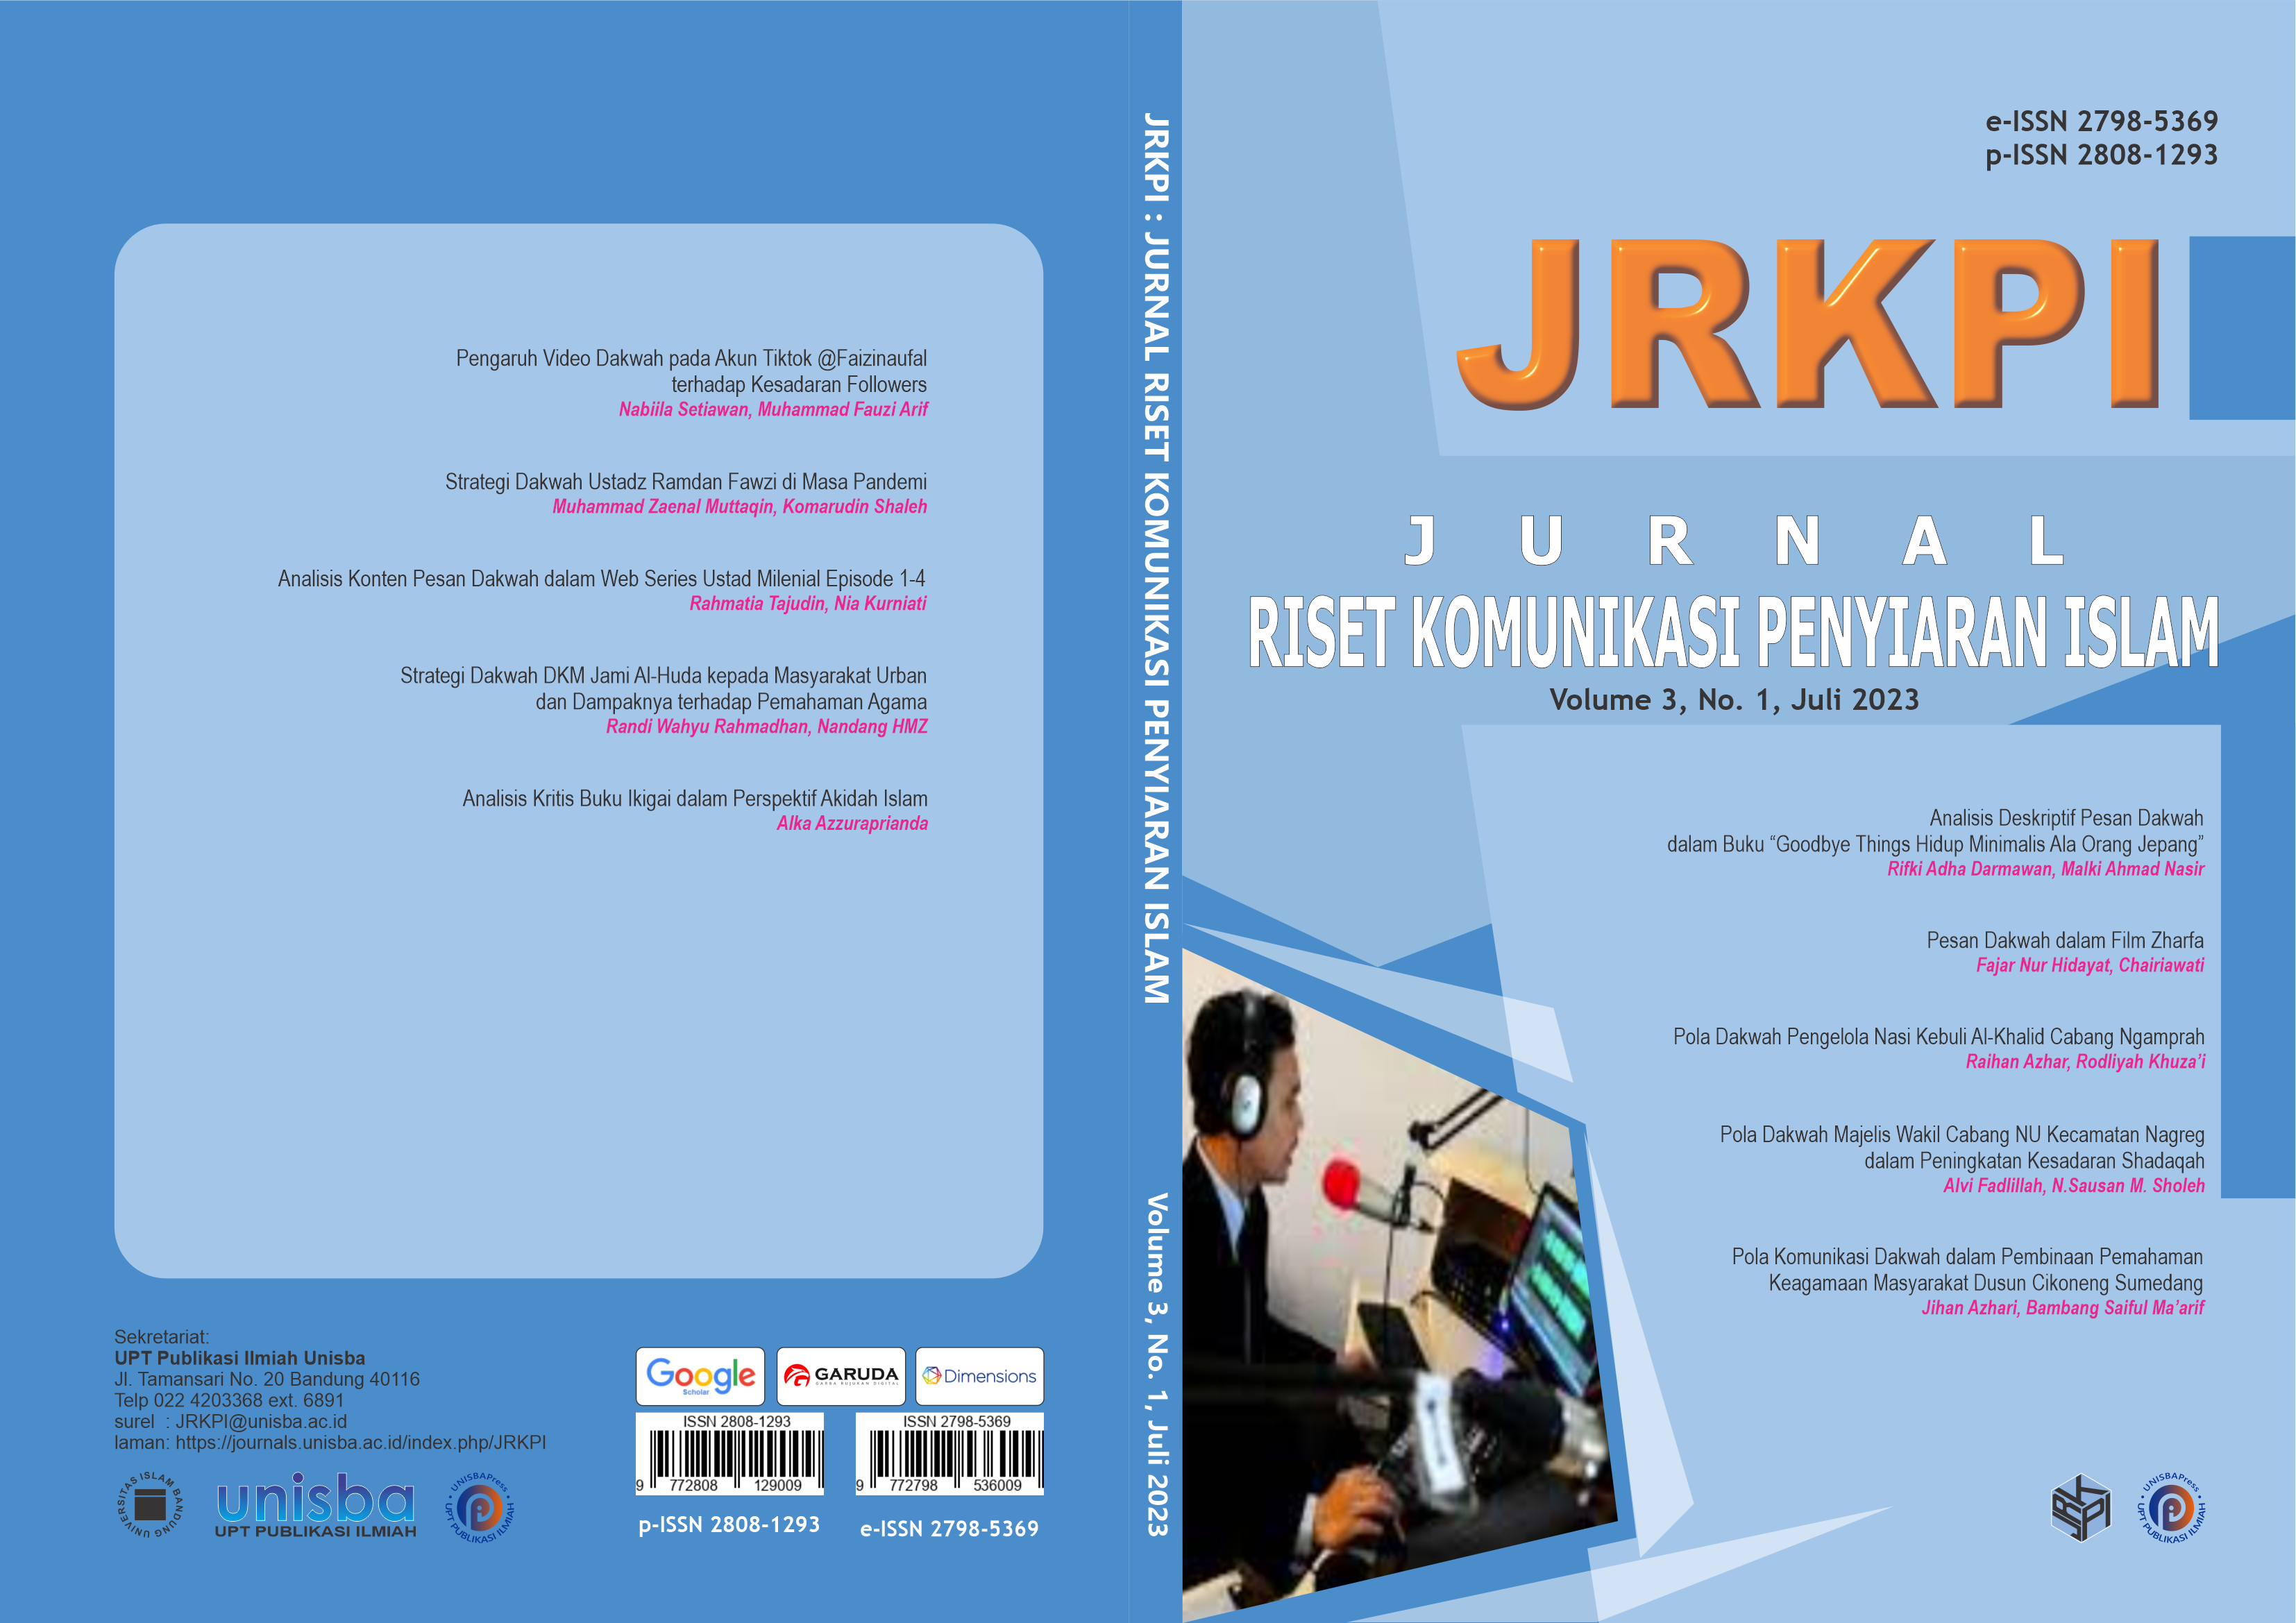 					View Volume 3, No.1, Juli 2023, Jurnal Riset Komunikasi Penyiaran Islam (JRKPI)
				